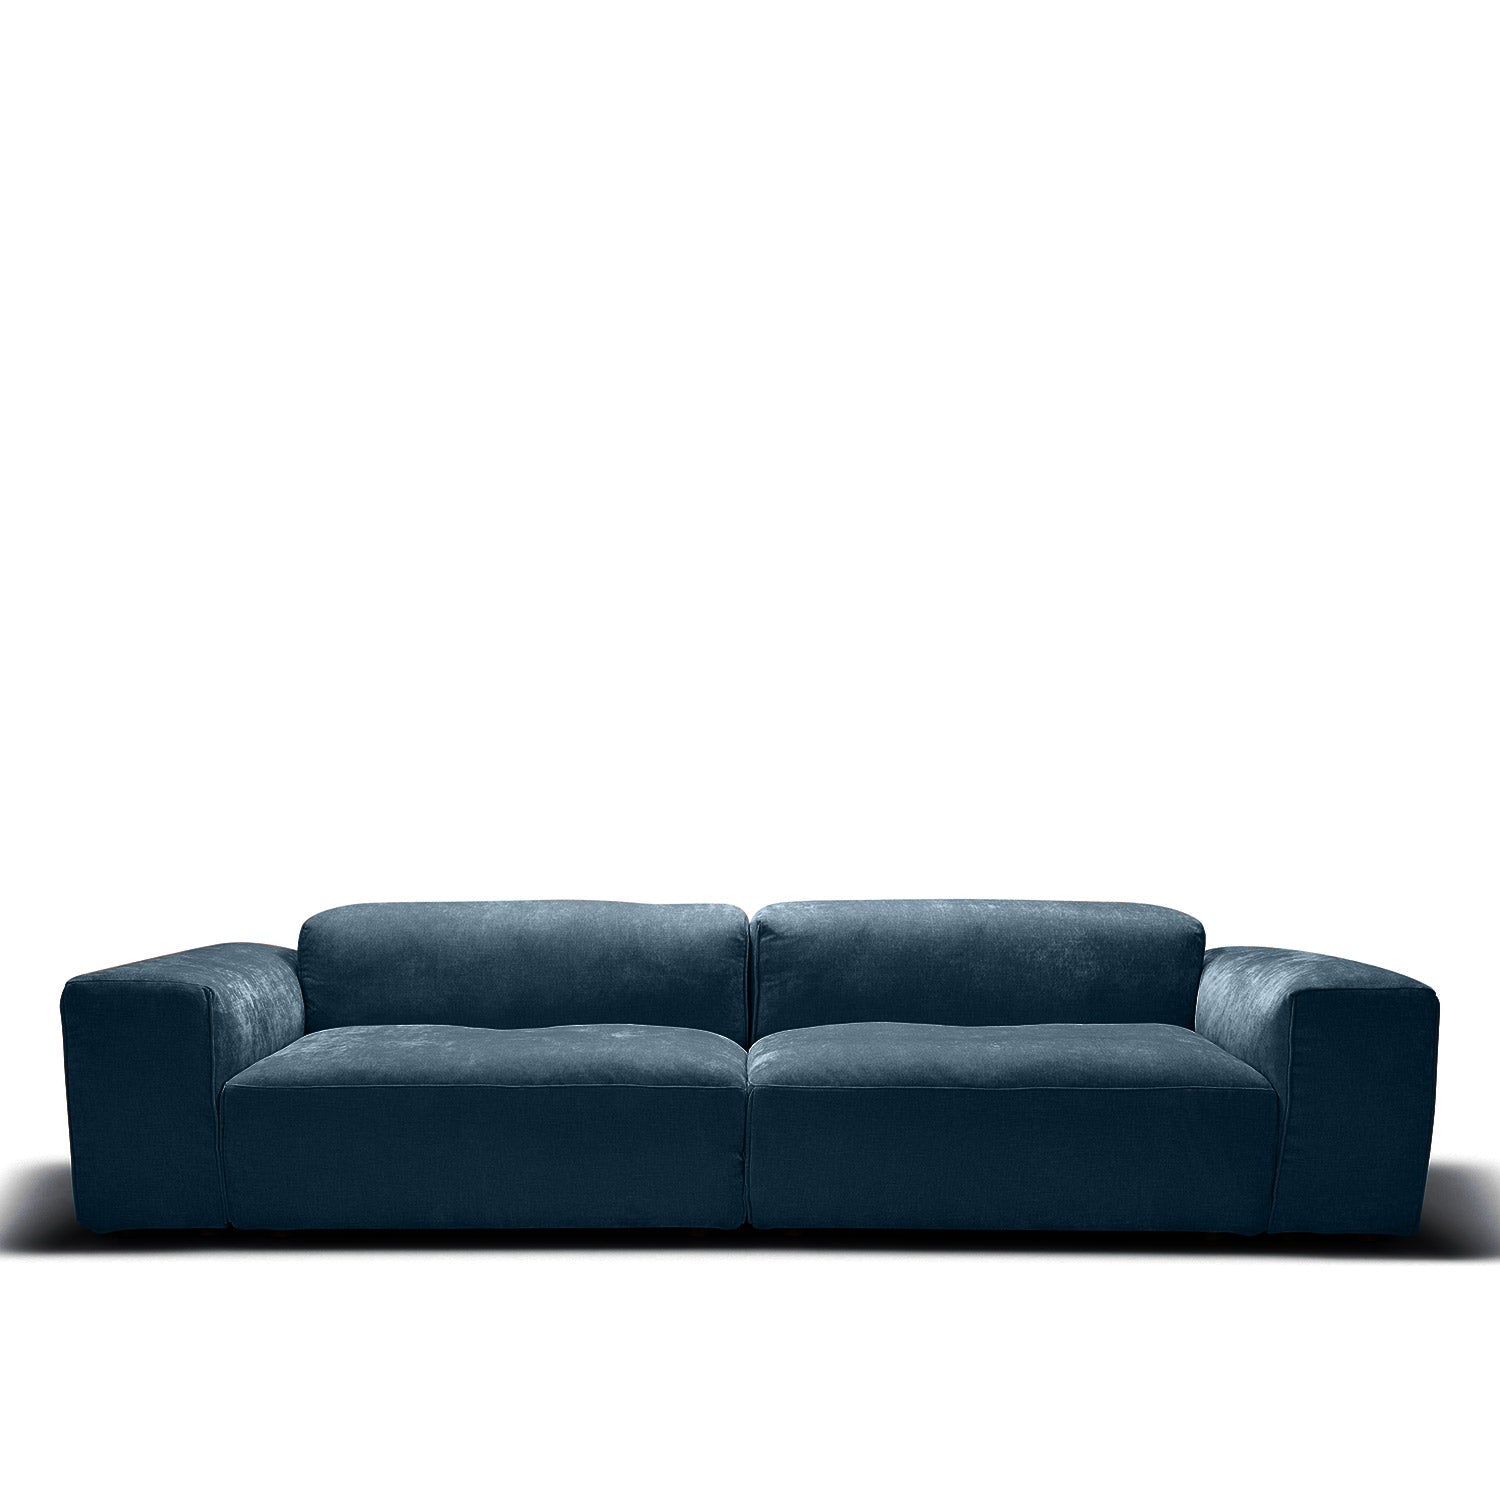 Edda 4-seter sofa Wildflower Midnight Blue, en del av kategorien 4-seter - At Home Interiør